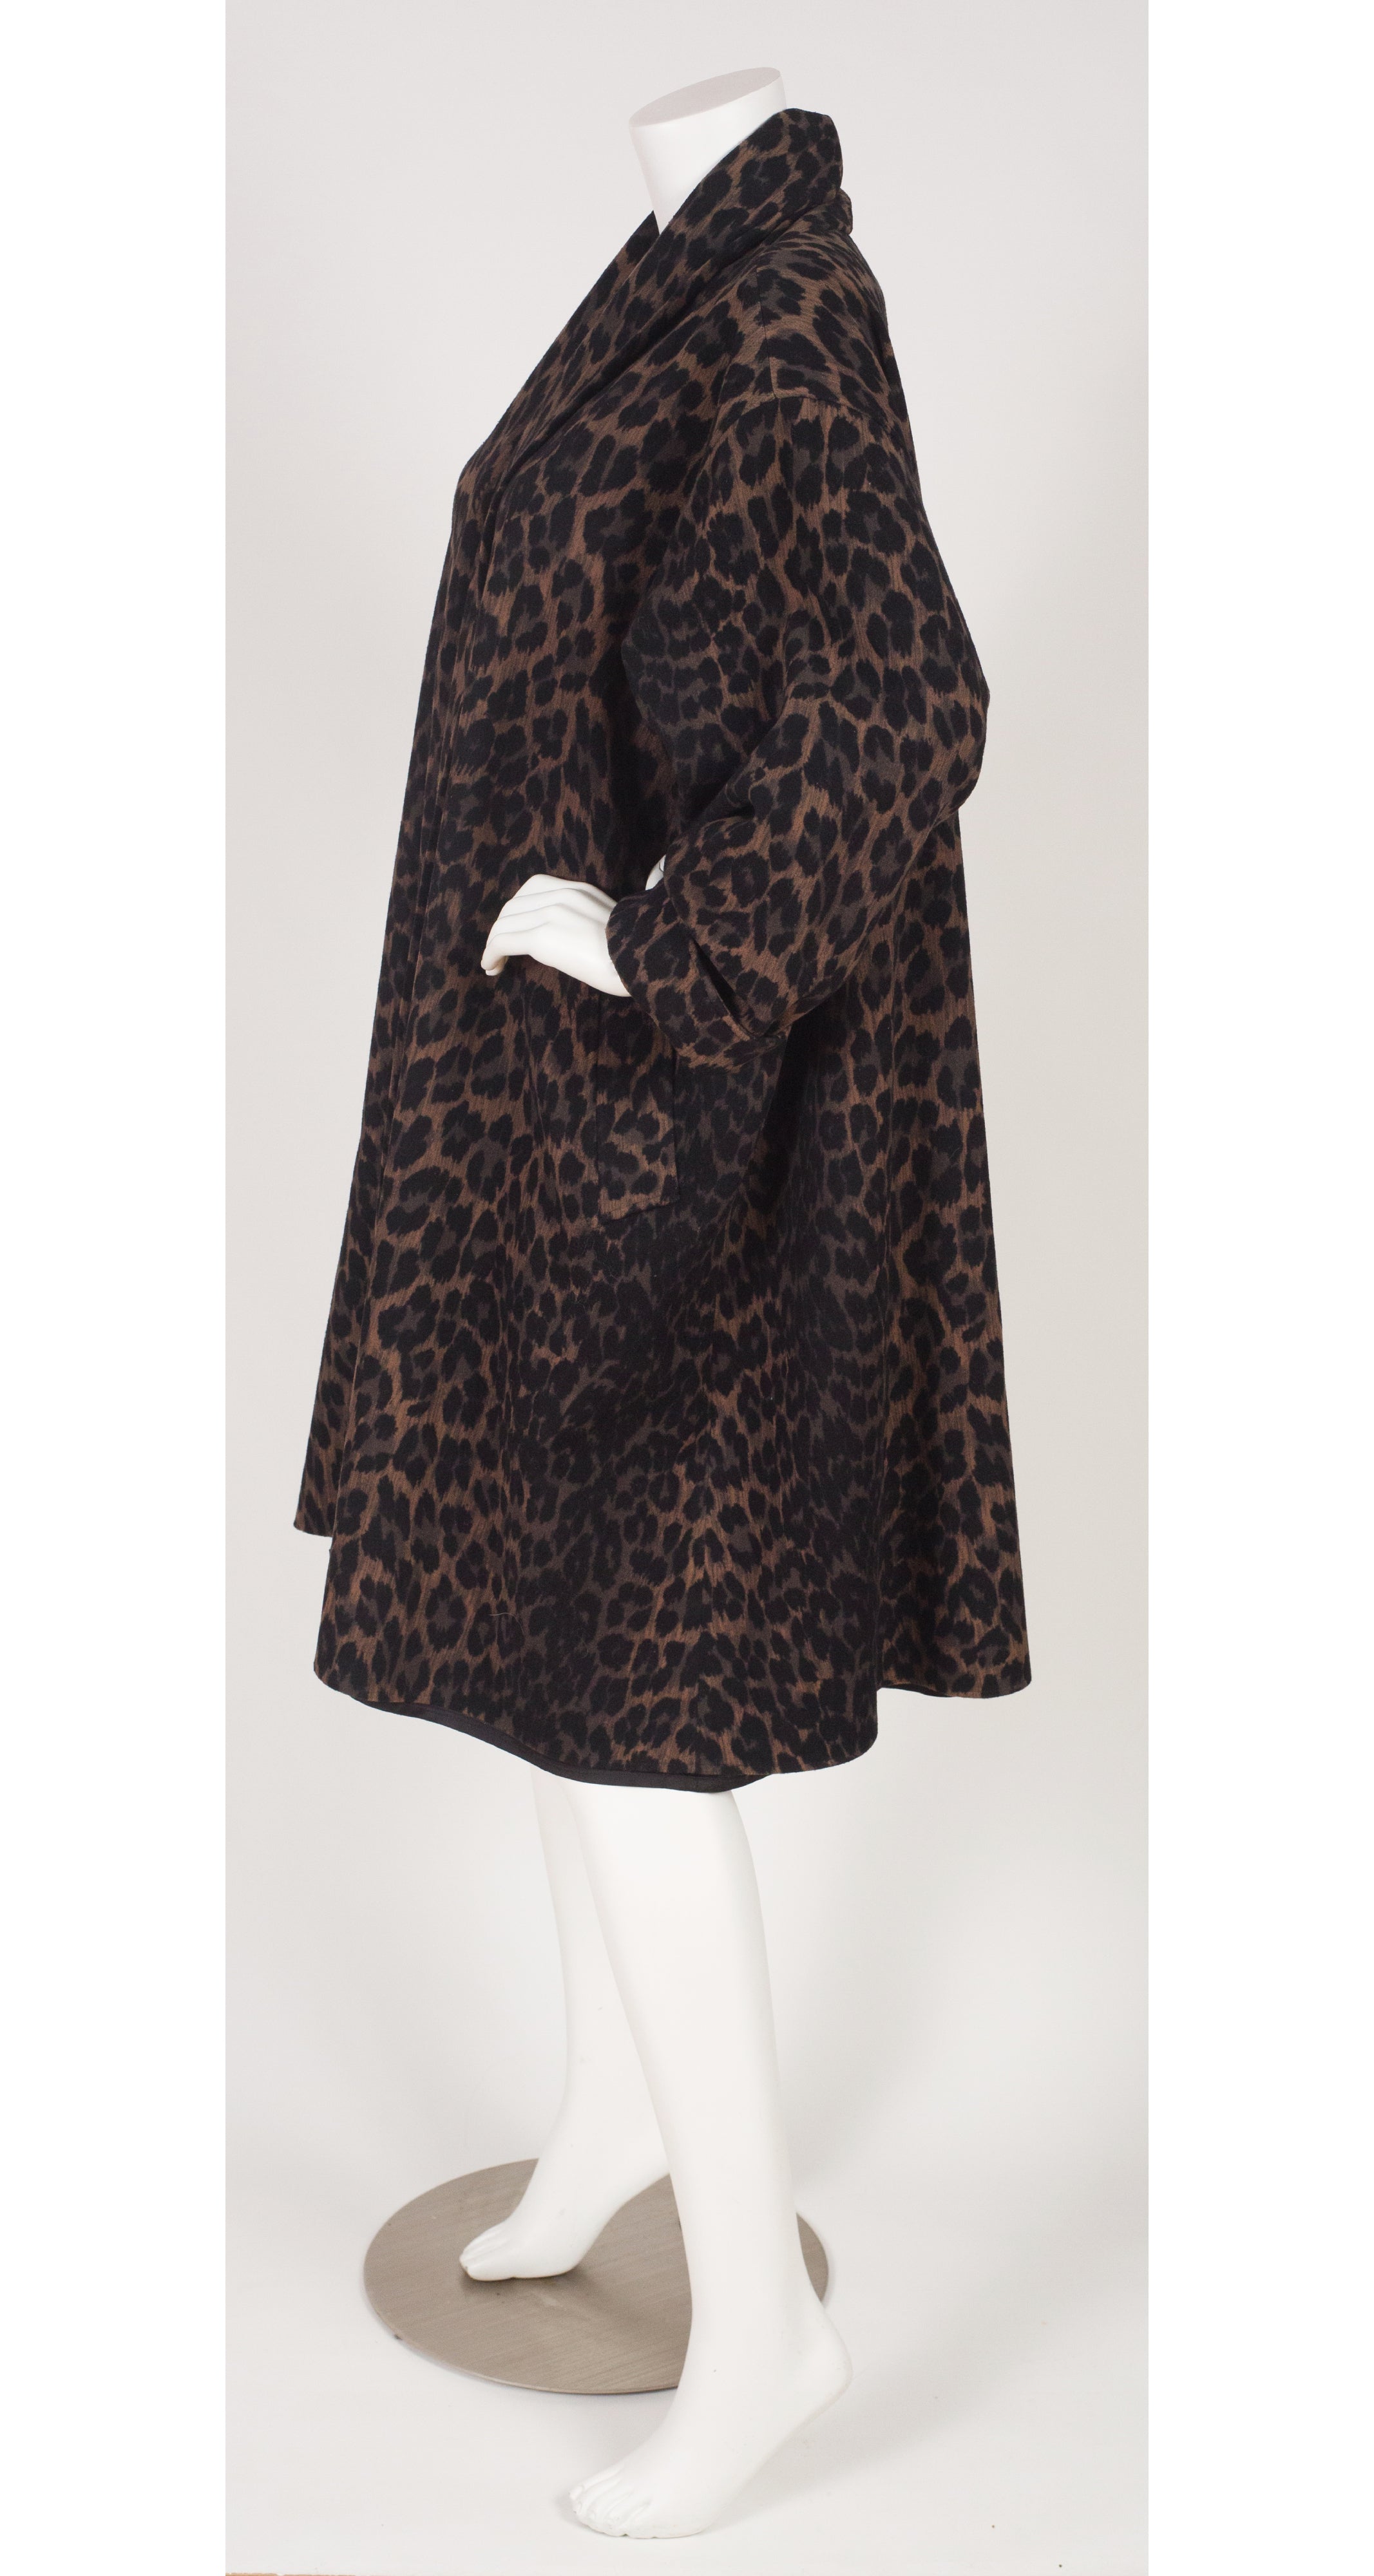 1980s Leopard Print Wool Swing Coat